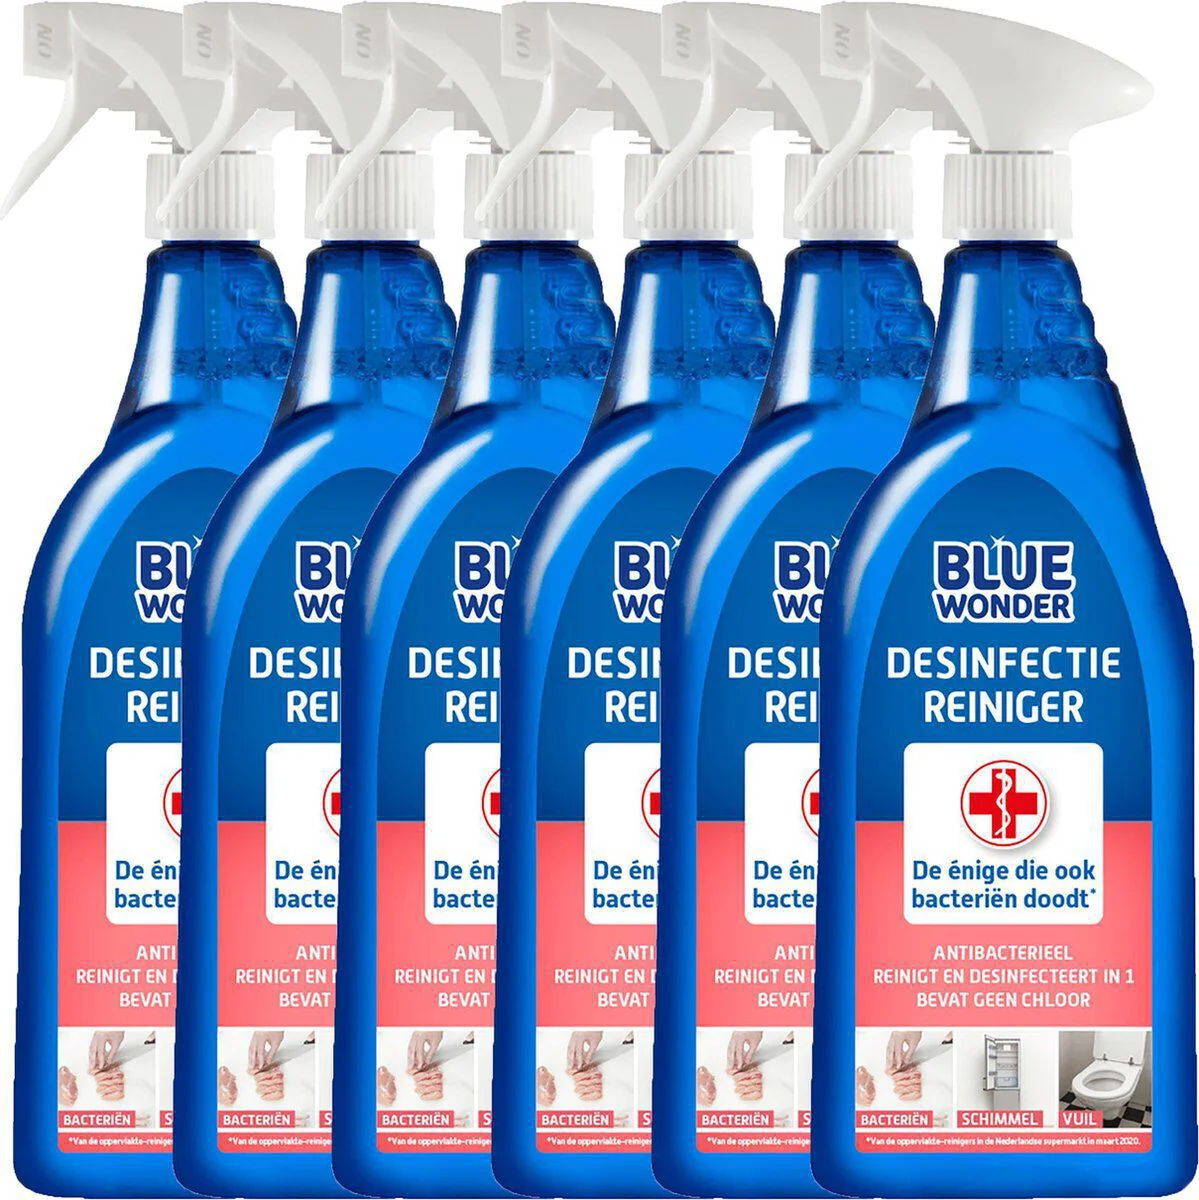 Blue Wonder desinfectie spray